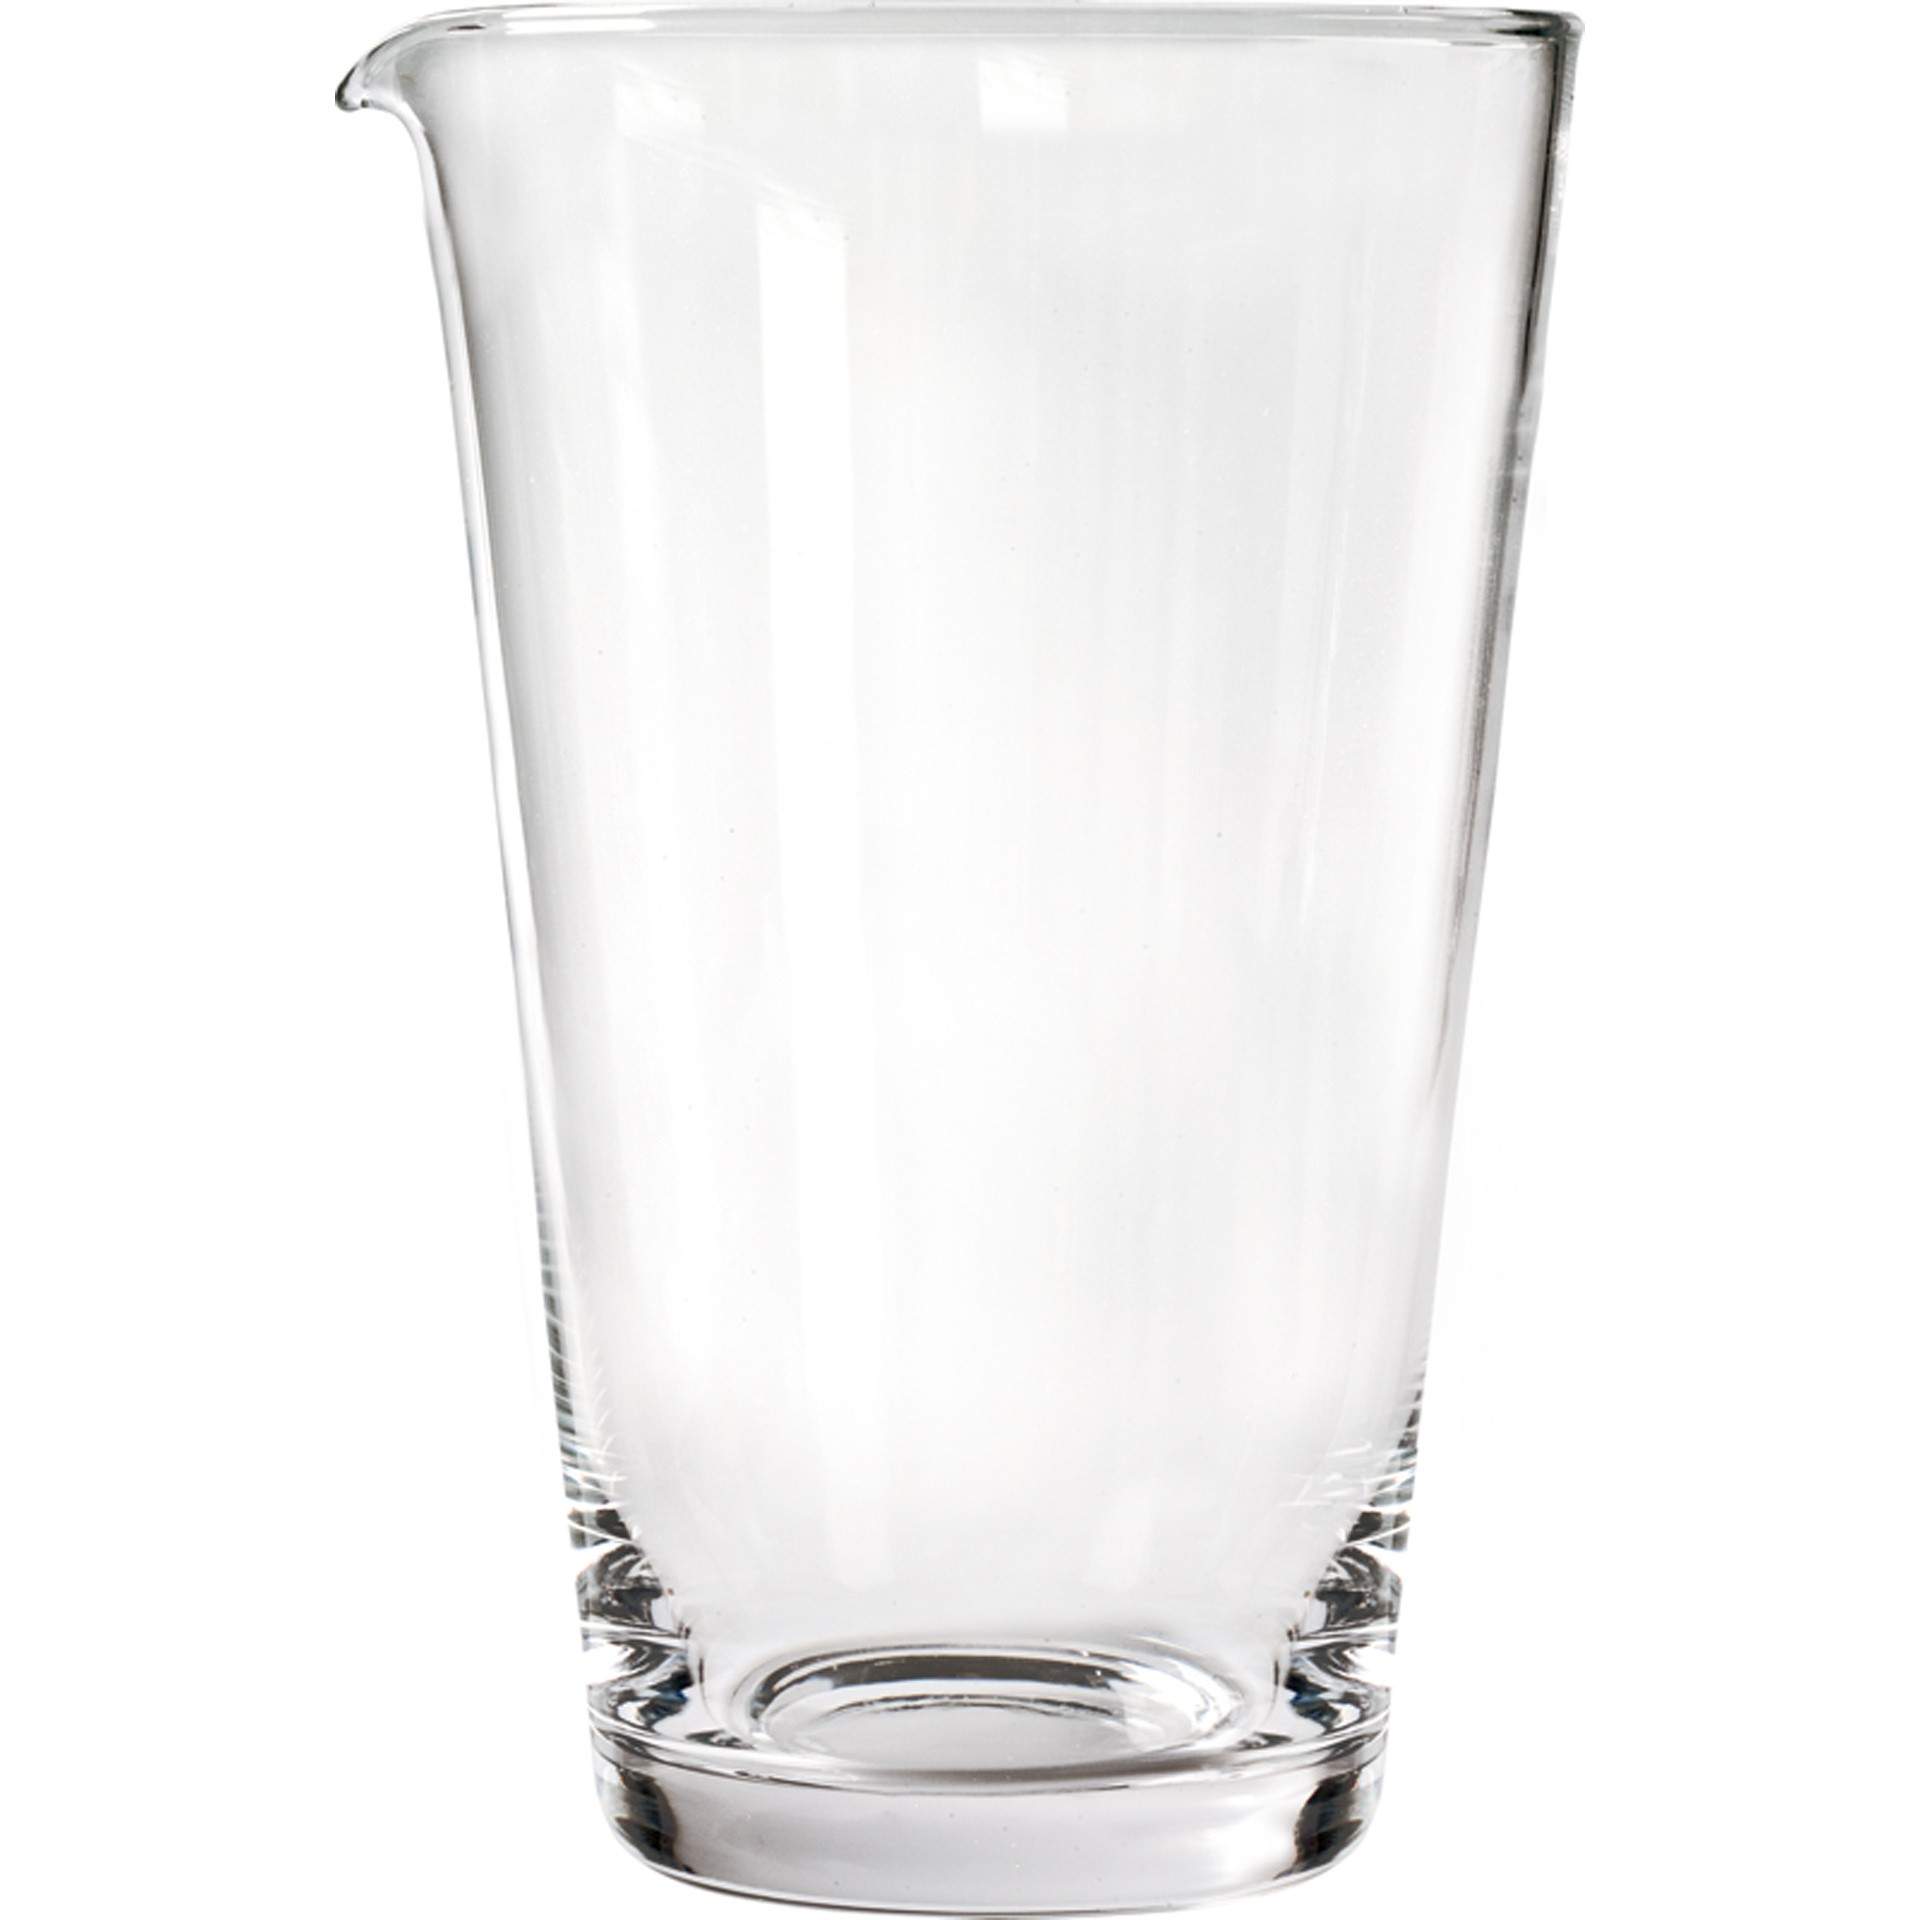 Rührglas - schwer - mit Lippe - Abm. 19 cm - Ø 11,5 cm - Inhalt 1,0 l - 93101-B